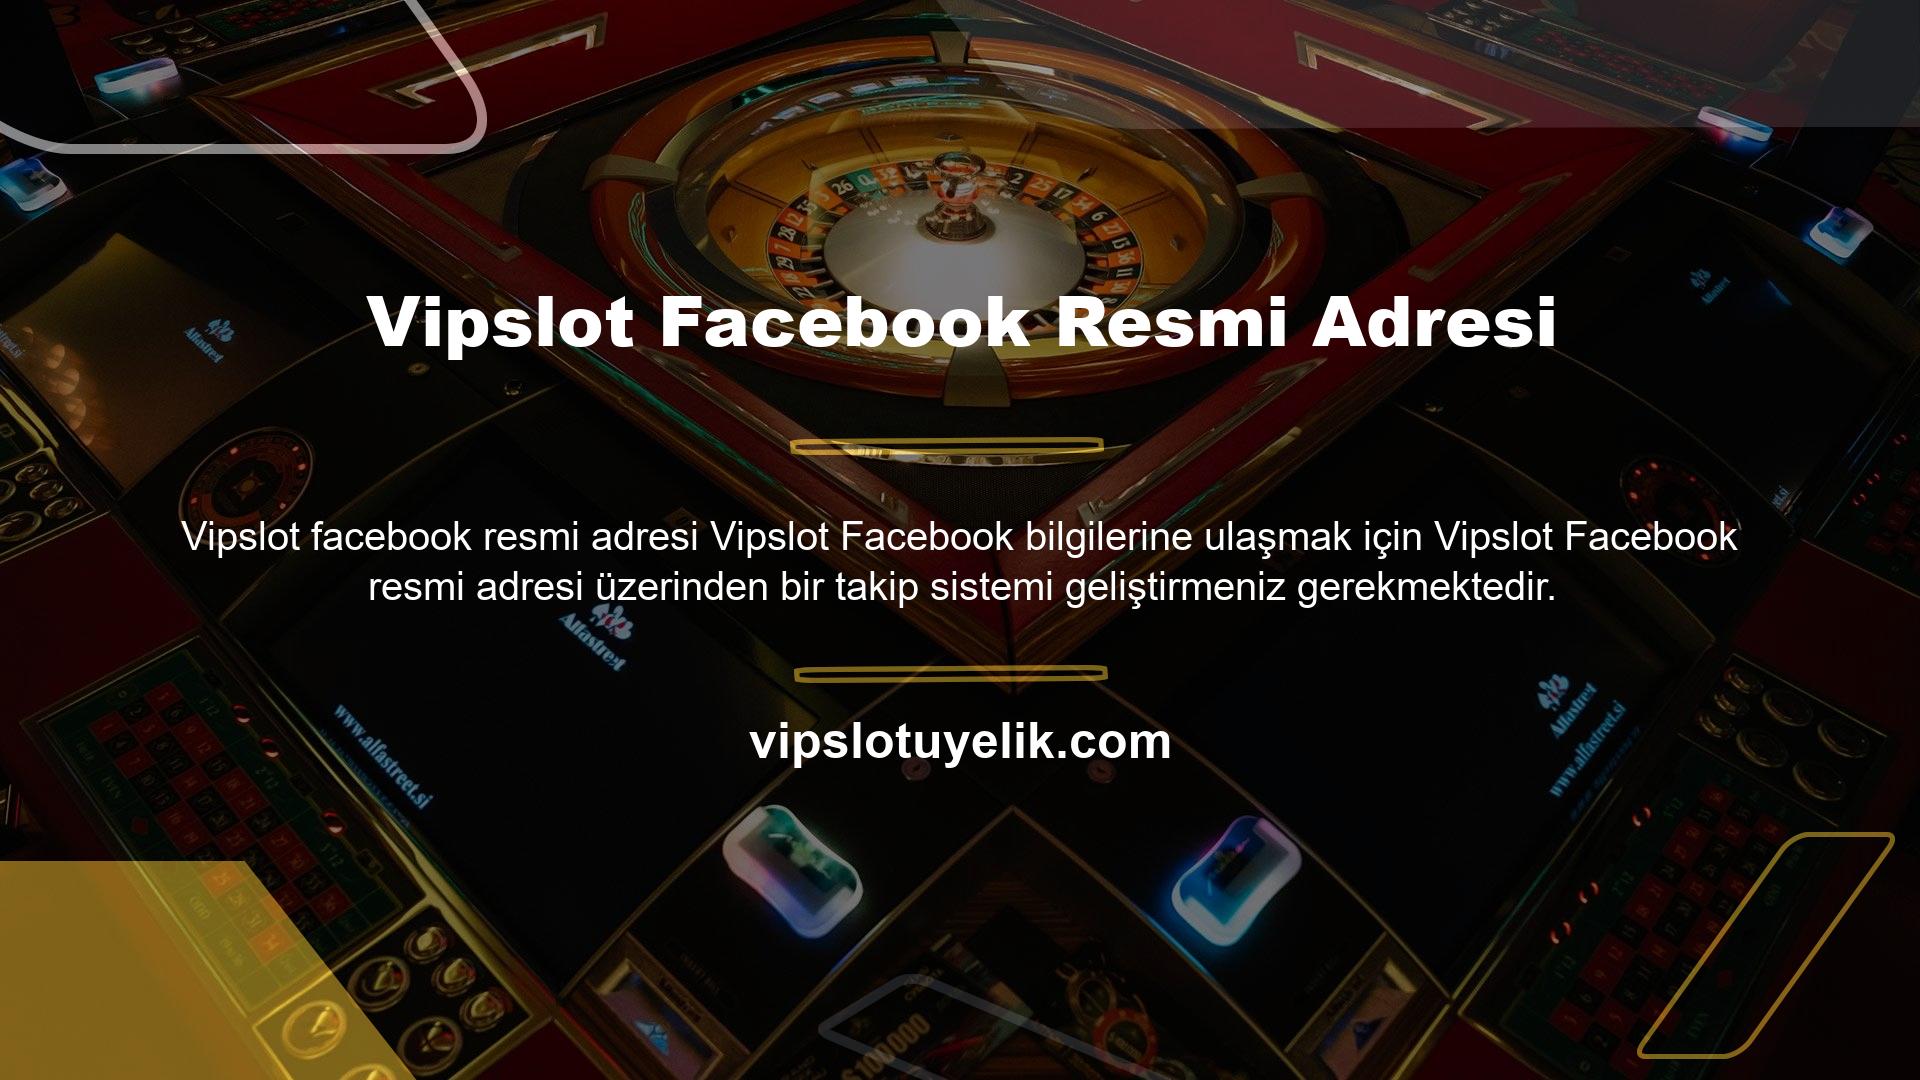 Lütfen bu web sitesinin resmi Facebook hesap adresinin Vipslot olduğunu unutmayın